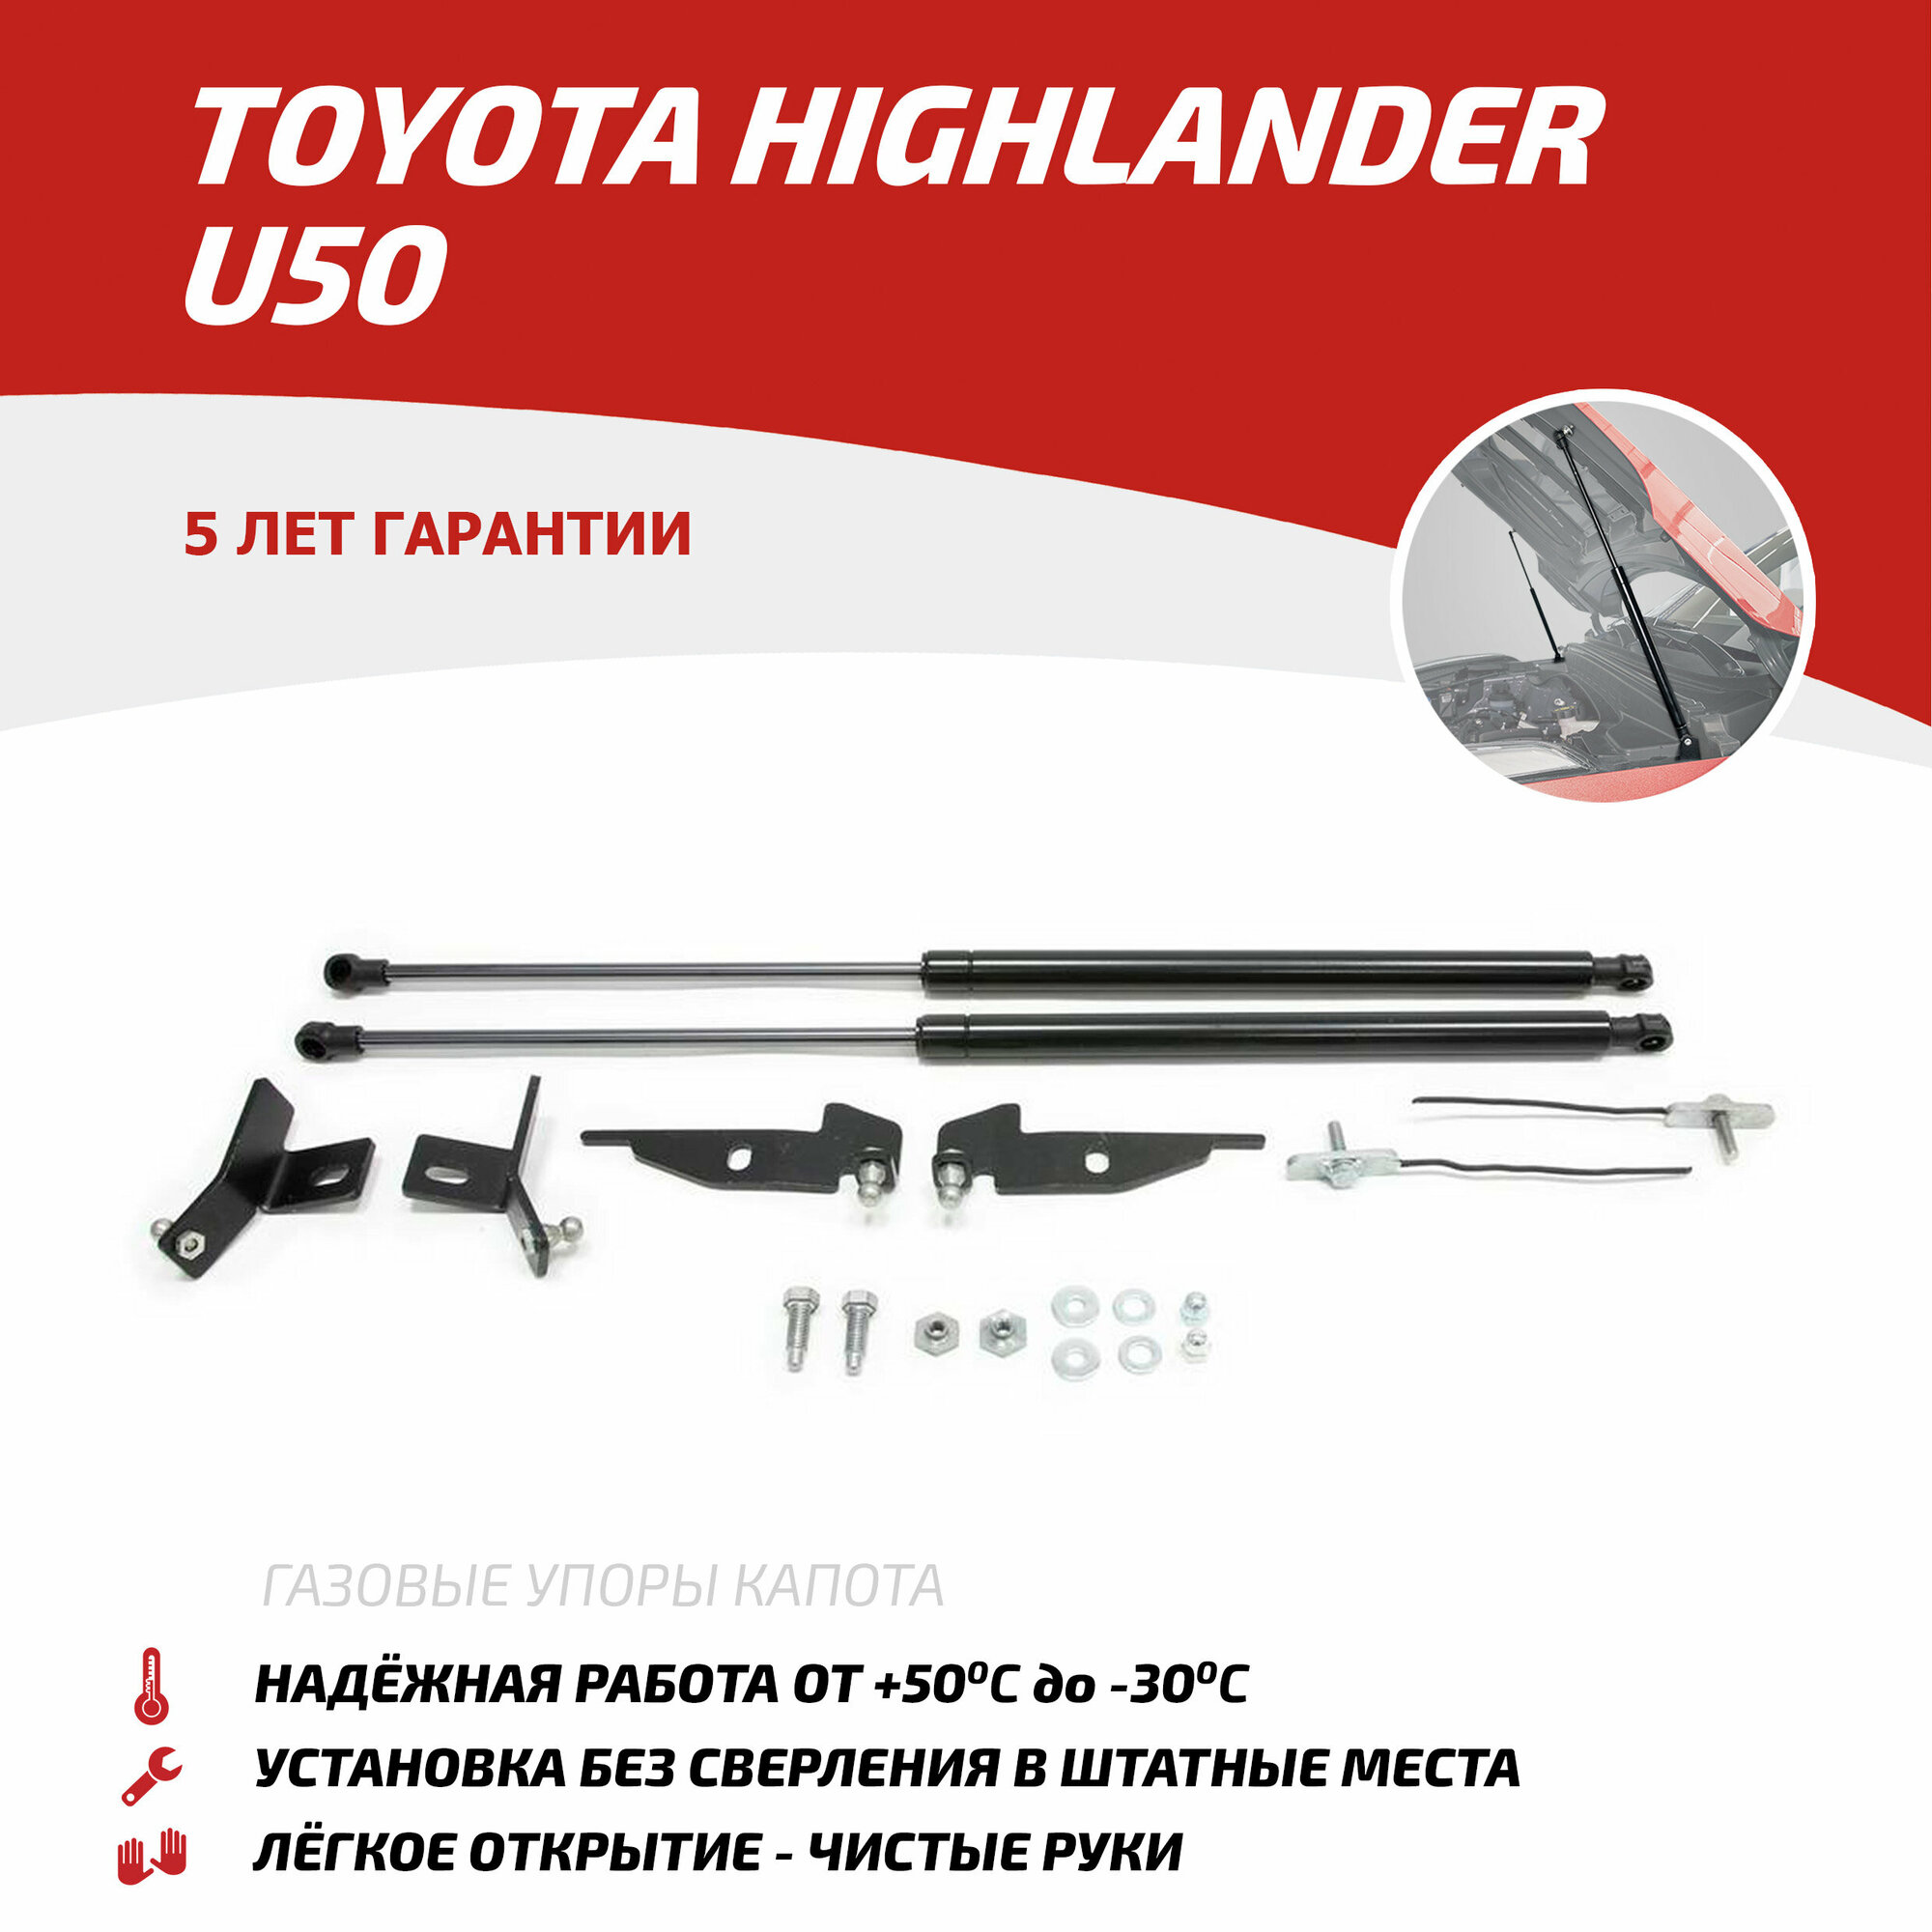 Газовые упоры капота АвтоУпор для Toyota Highlander U50 2013-2020, 2 шт, UTOHIG013